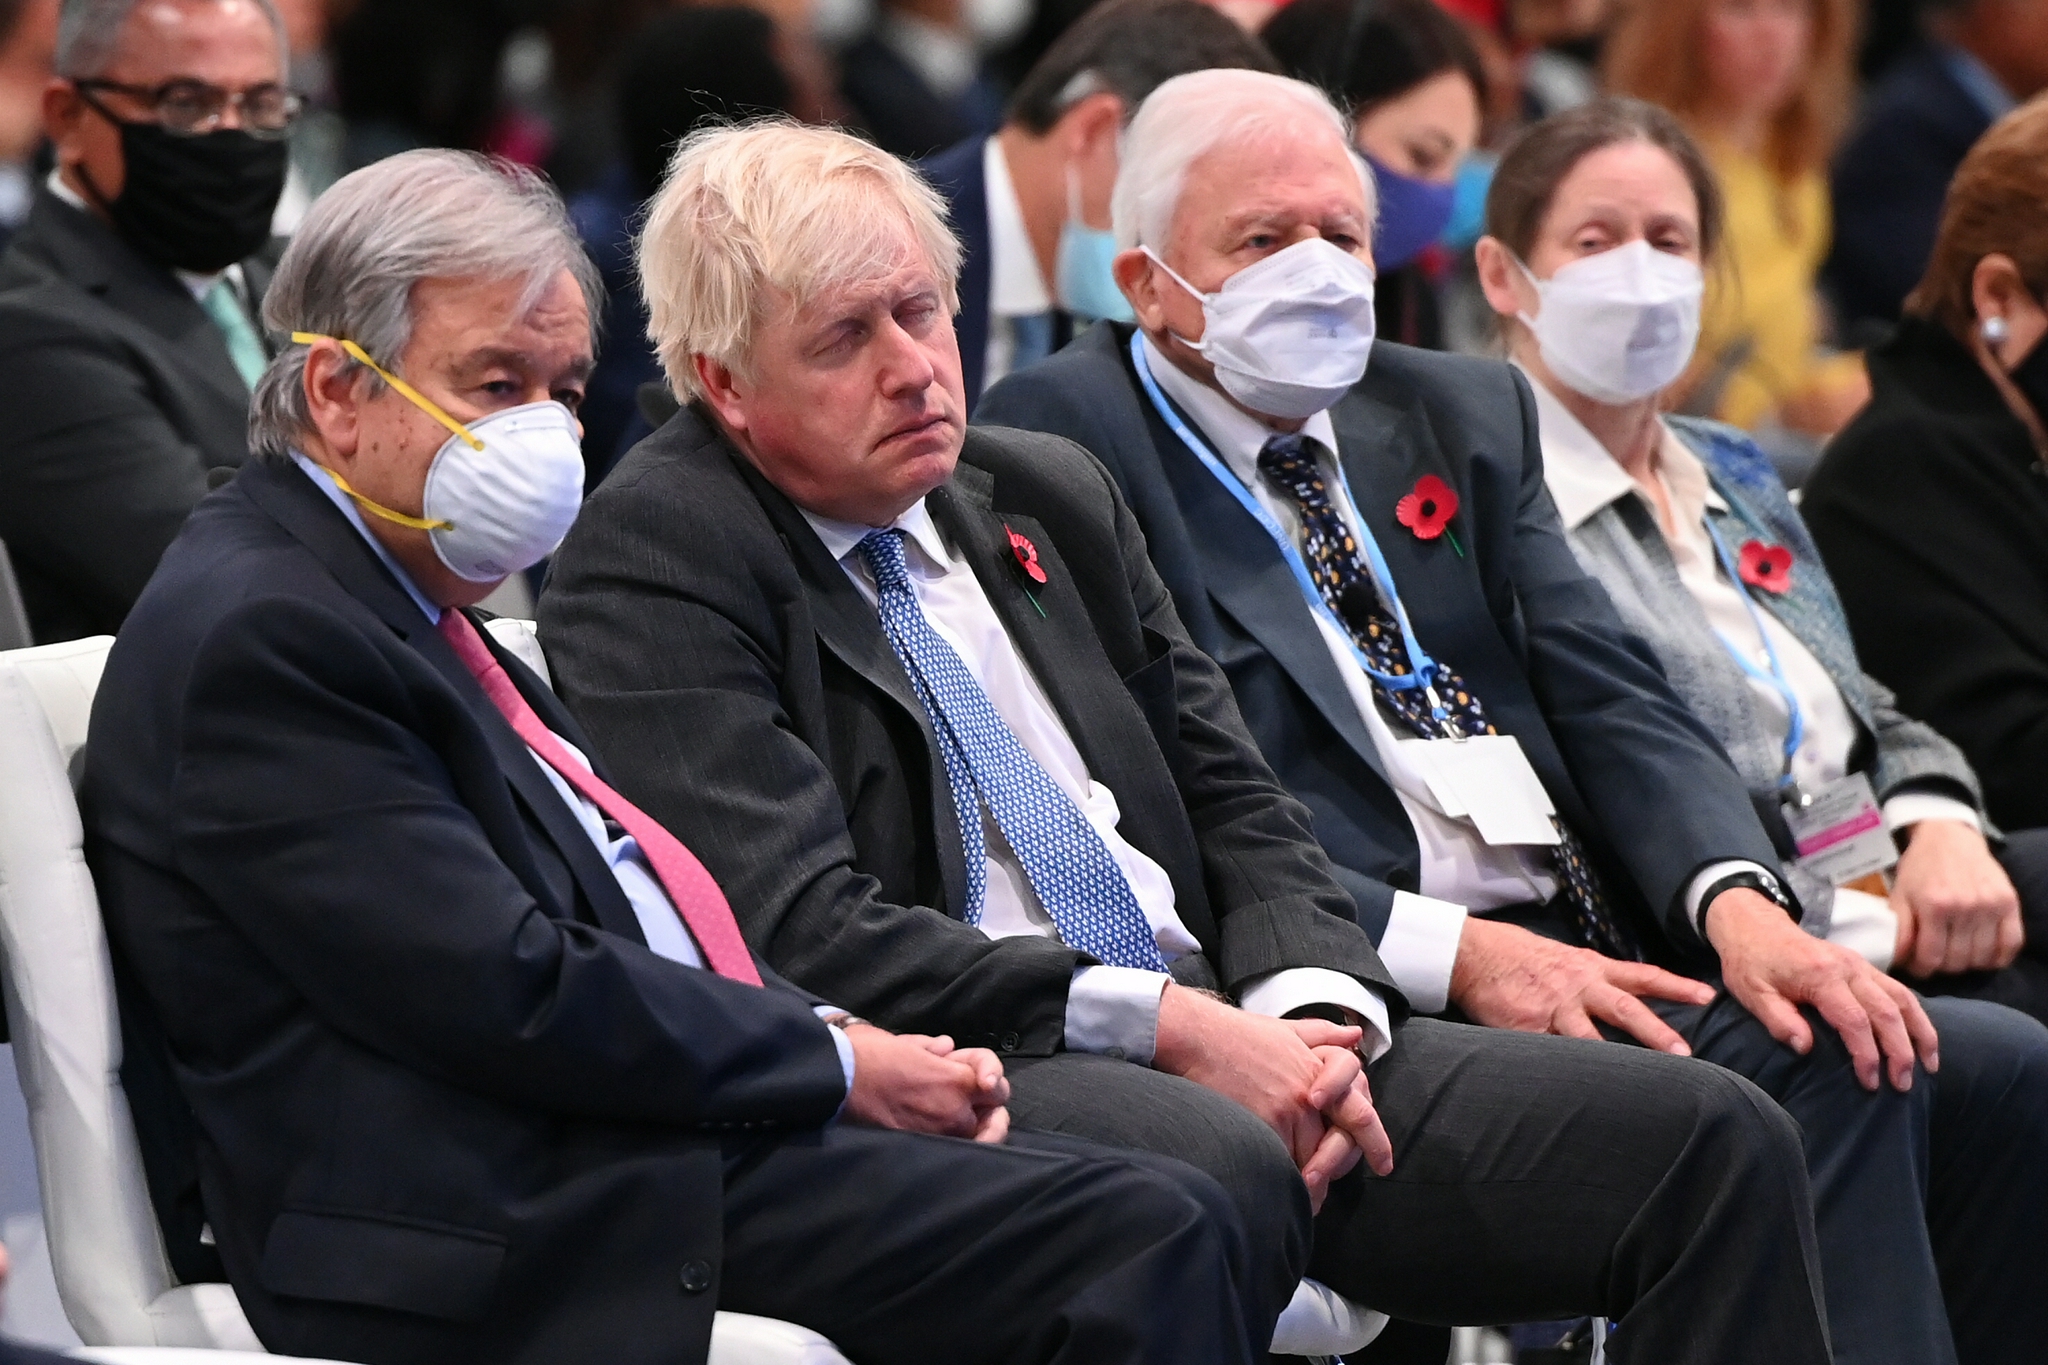 《卫报》称之为本次大会的“标志性画面”——在重要的开幕式上，东道国首相（左二）未戴口罩“似乎睡着了”，显得“鹤立鸡群” 图自视觉中国